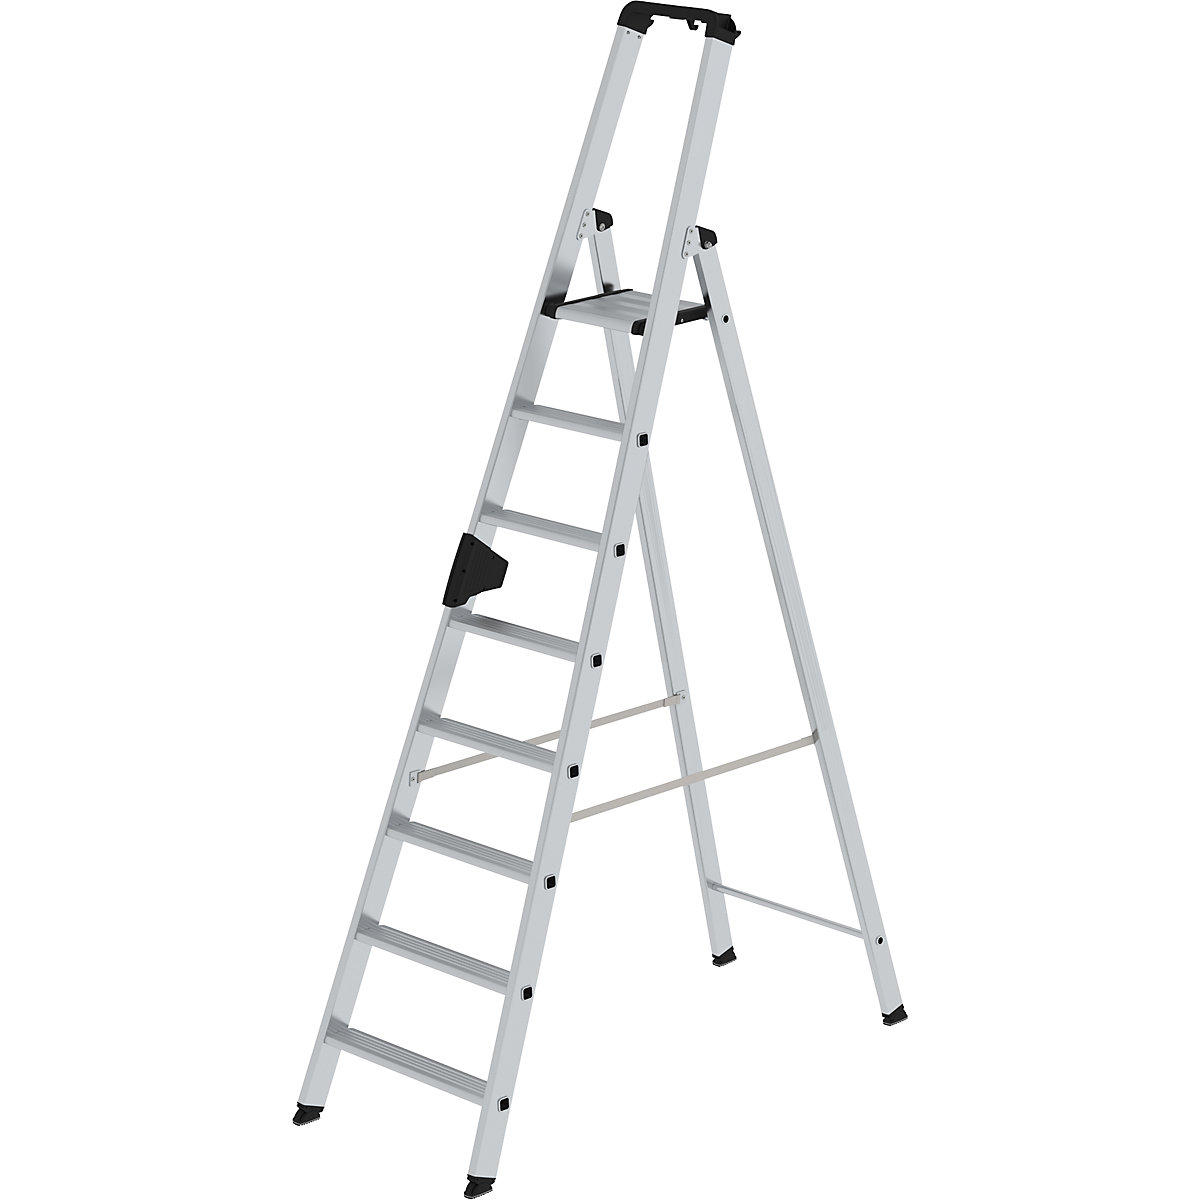 MUNK Stufen-Stehleiter, einseitig, Komfort-Ausführung mit ergo-pad®, 8 Stufen